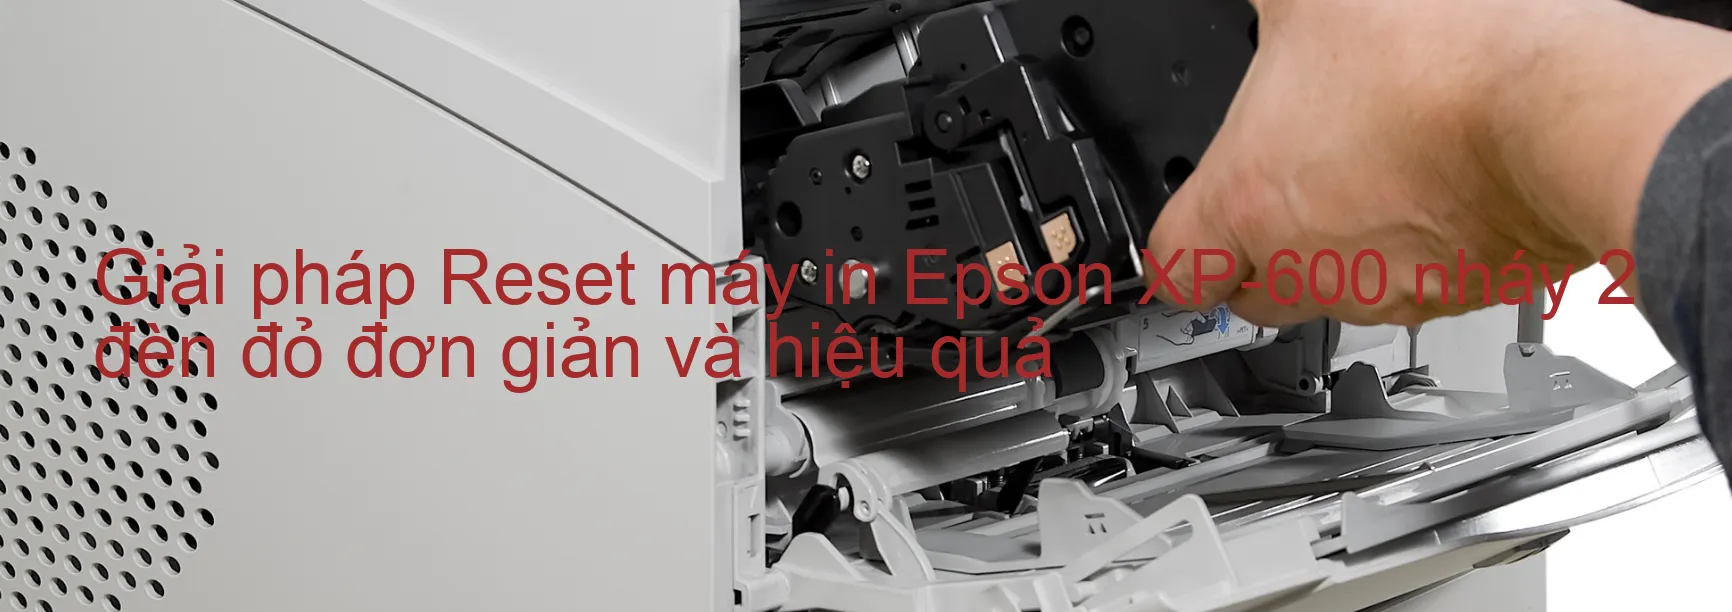 Reset máy in Epson XP-600 nháy 2 đèn đỏ: Cách khắc phục lỗi một cách đơn giản và hiệu quả